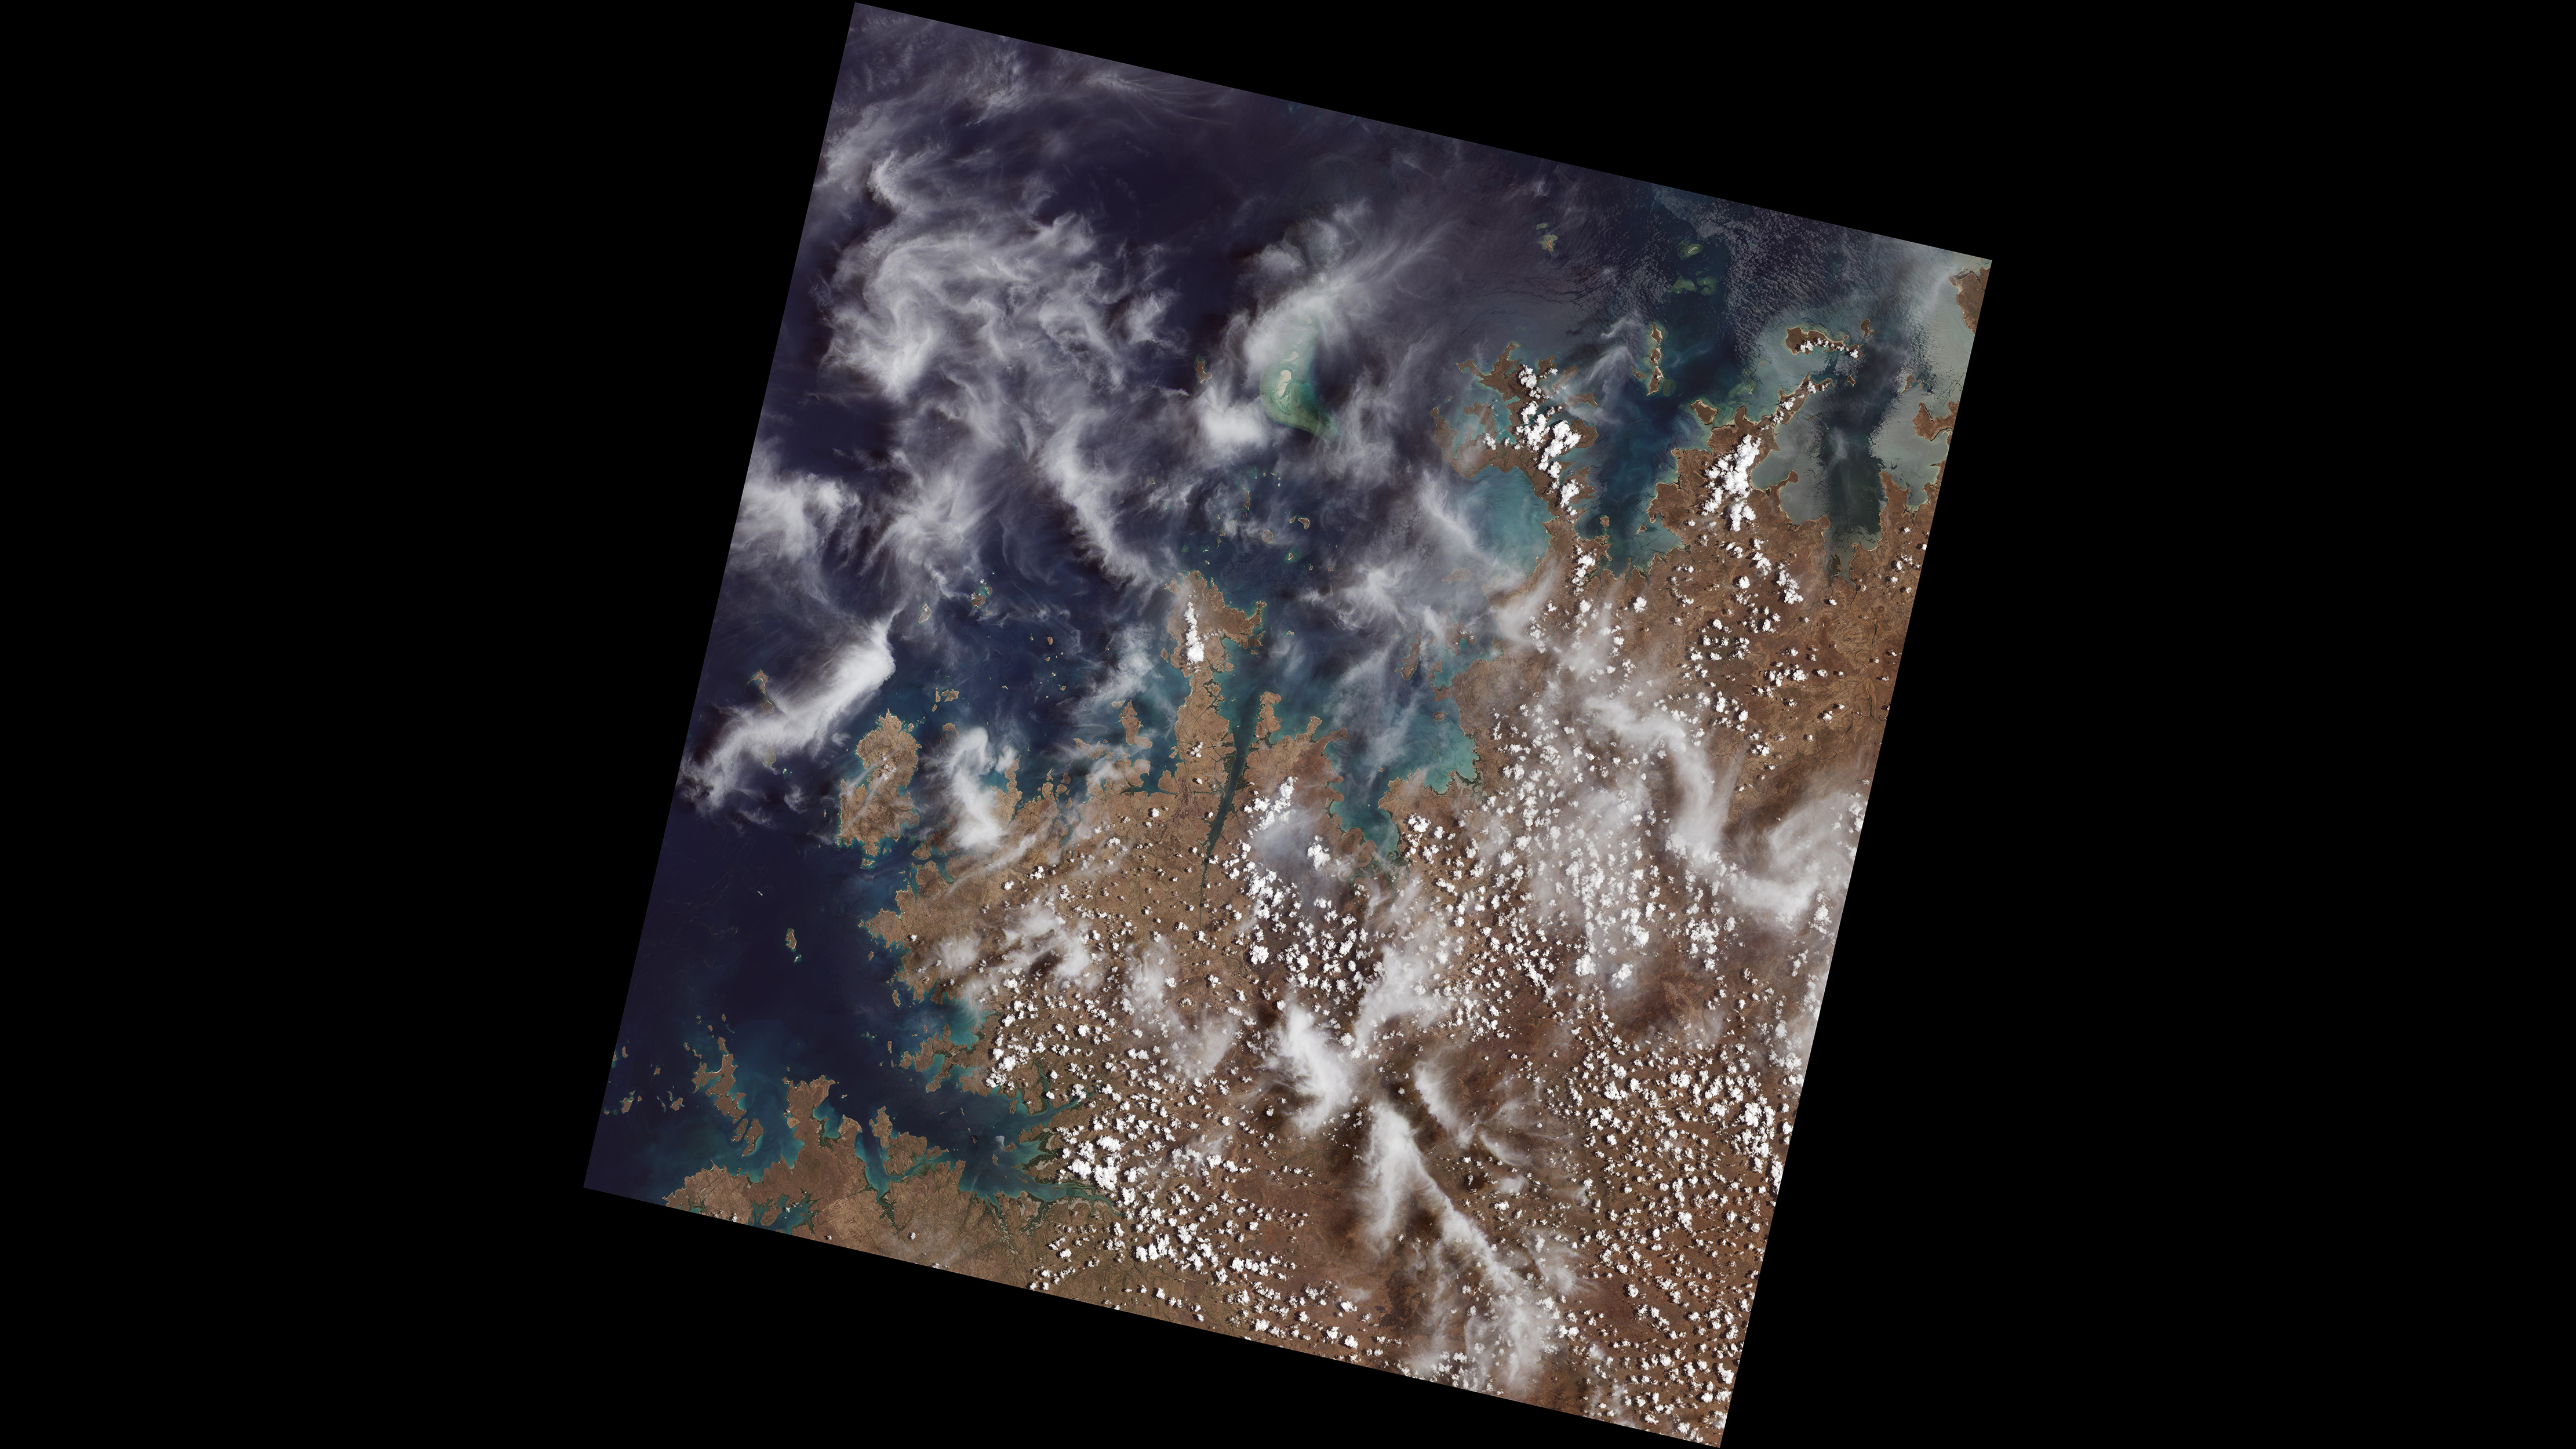 Das erste von Landsat 9 am 31. Oktober 2021 aufgenommene Bild zeigt abgelegene Küsteninseln und Buchten der Kimberly-Region in Westaustralien.  Im oberen mittleren Teil des Bildes schneidet sich der Mitchell River durch Sandstein, während links Bigge Island und die Coronation Islands im Indischen Ozean hervorstechen.